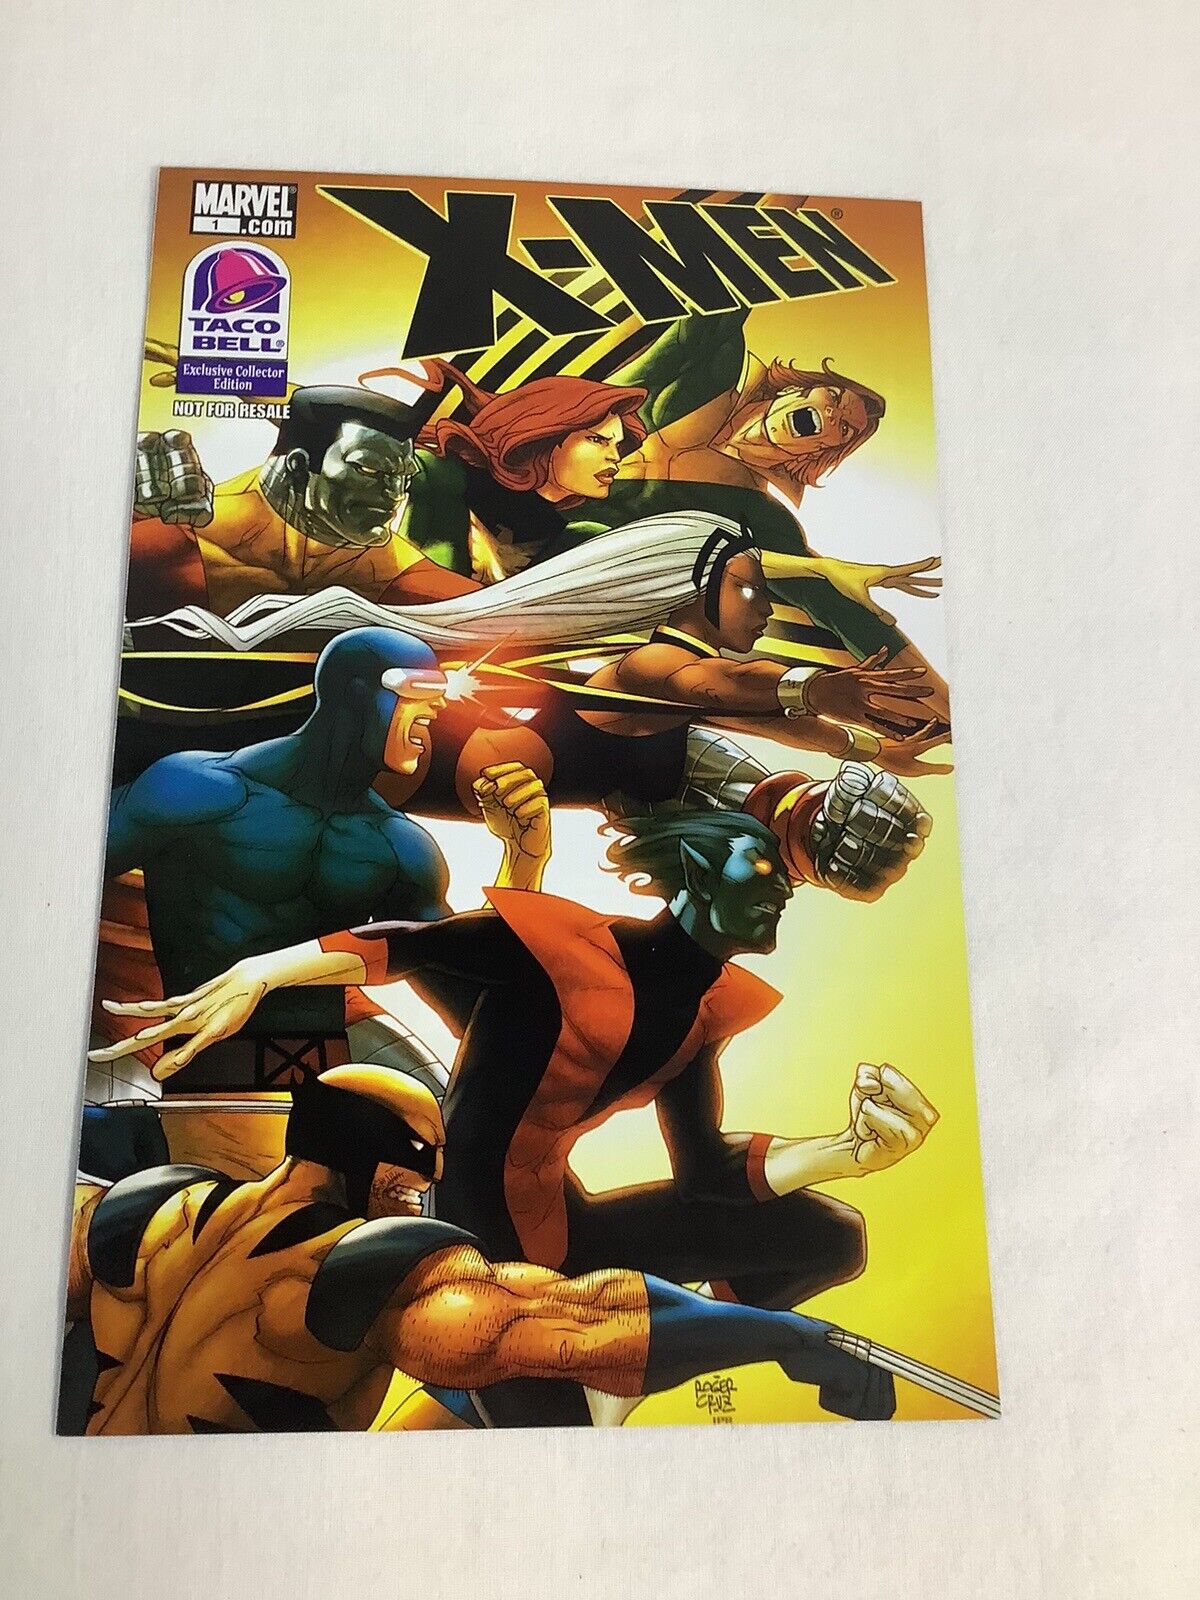 X-Men Taco Bell Exclusive Edition (2011) #1  Marvel Comics